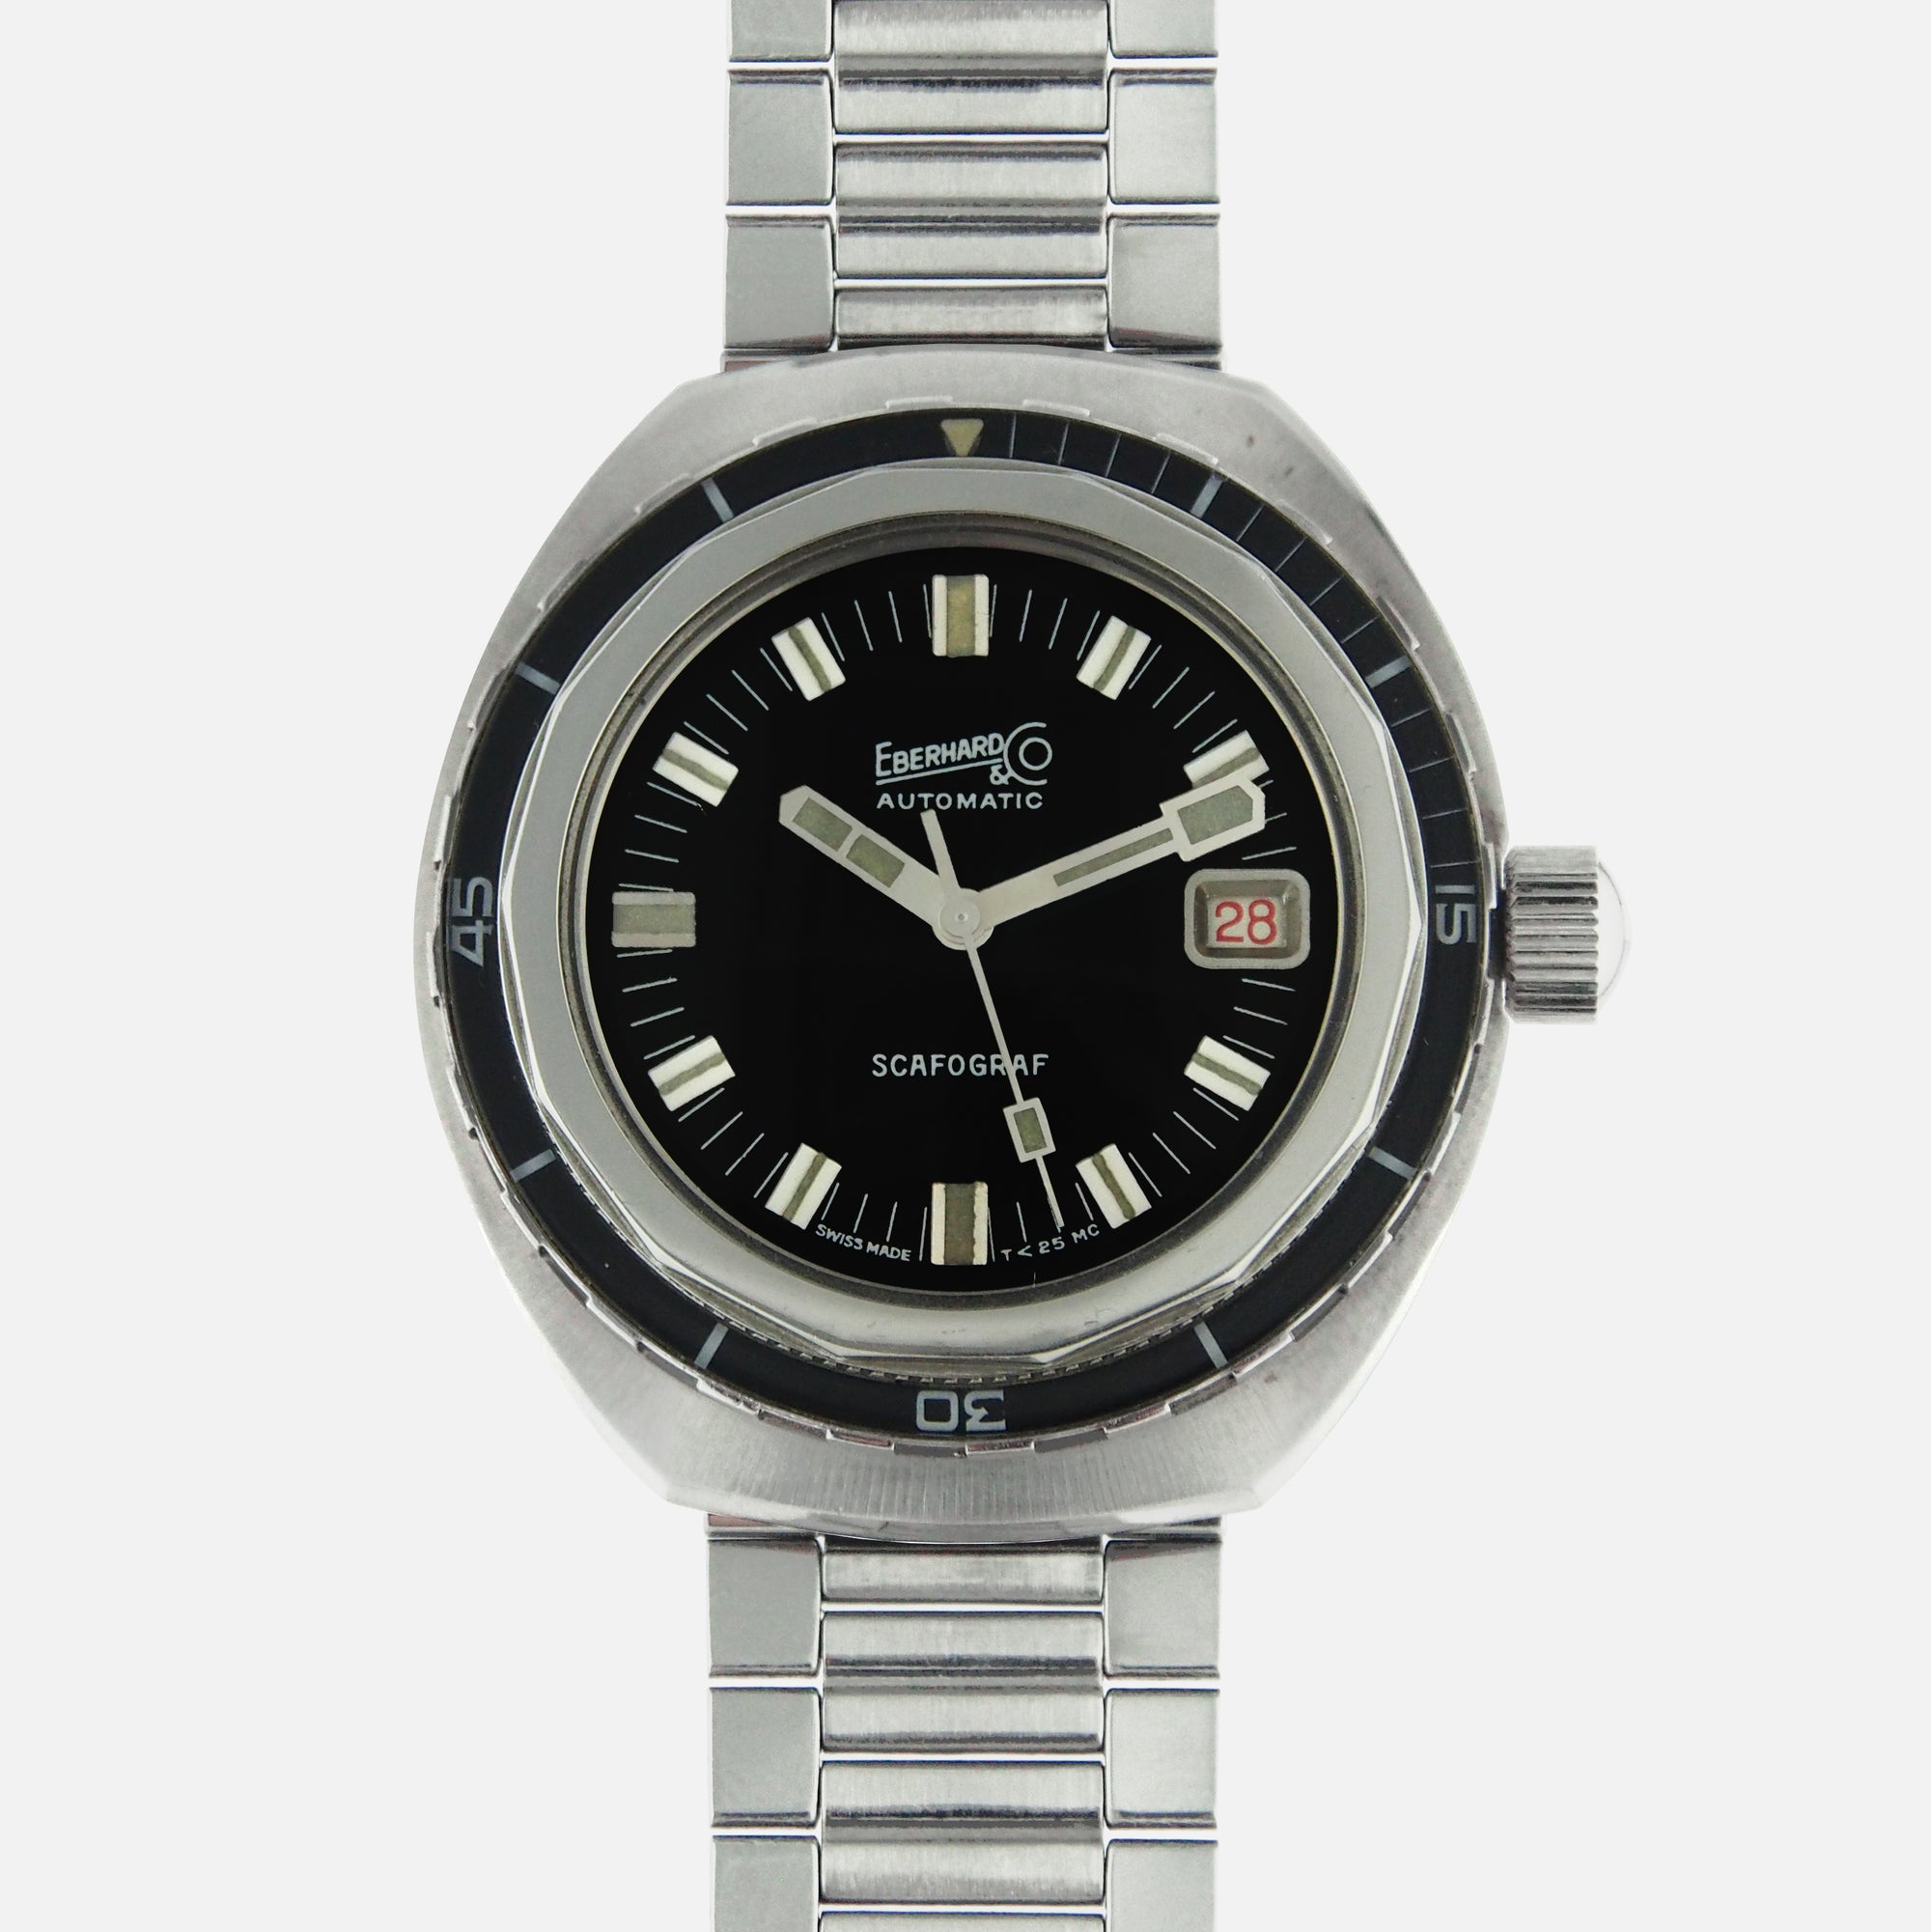 1960s Eberhard Scafograf 400 Vintage for sale - Vintage Watch Leader